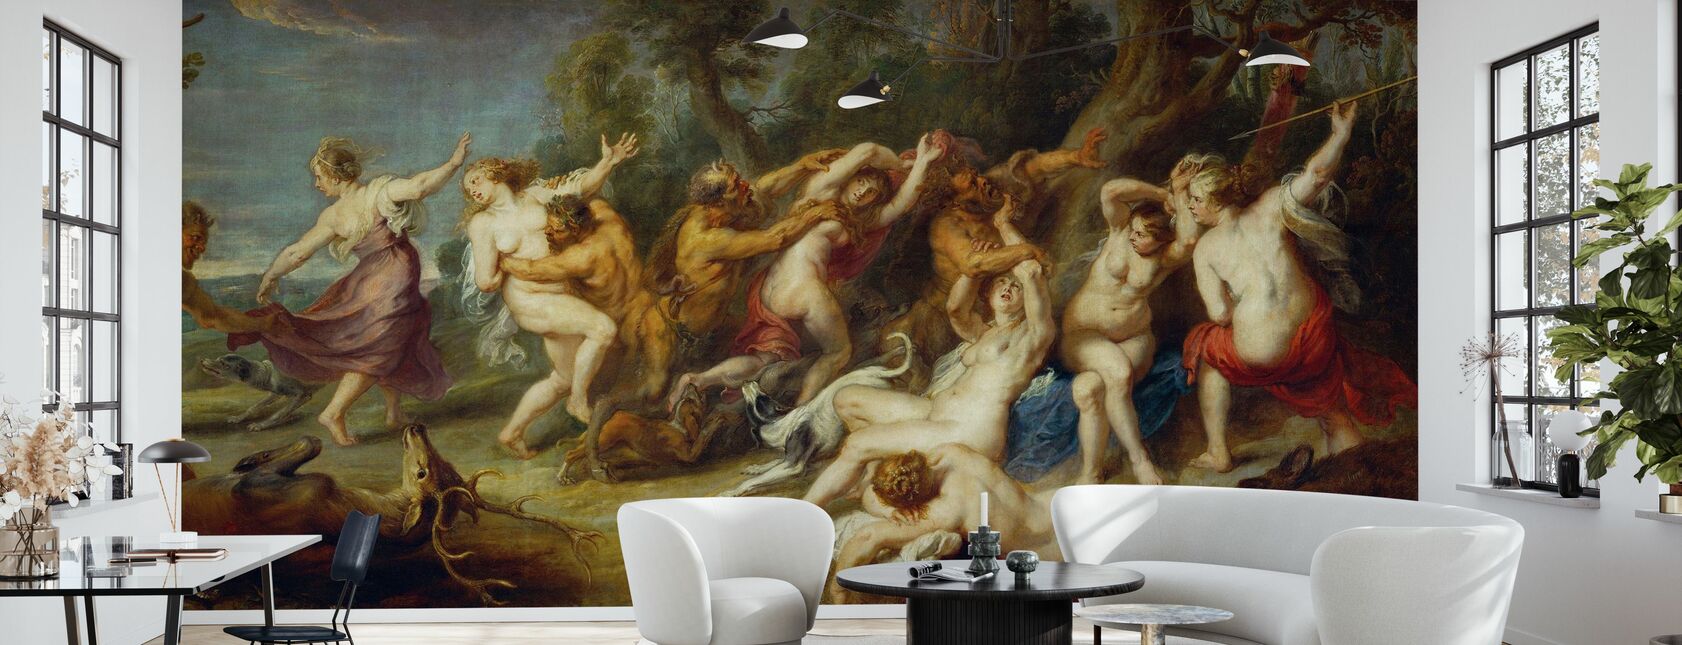 Diana et ses Nymphes, Peter Paul Rubens - Papier peint - Salle à manger